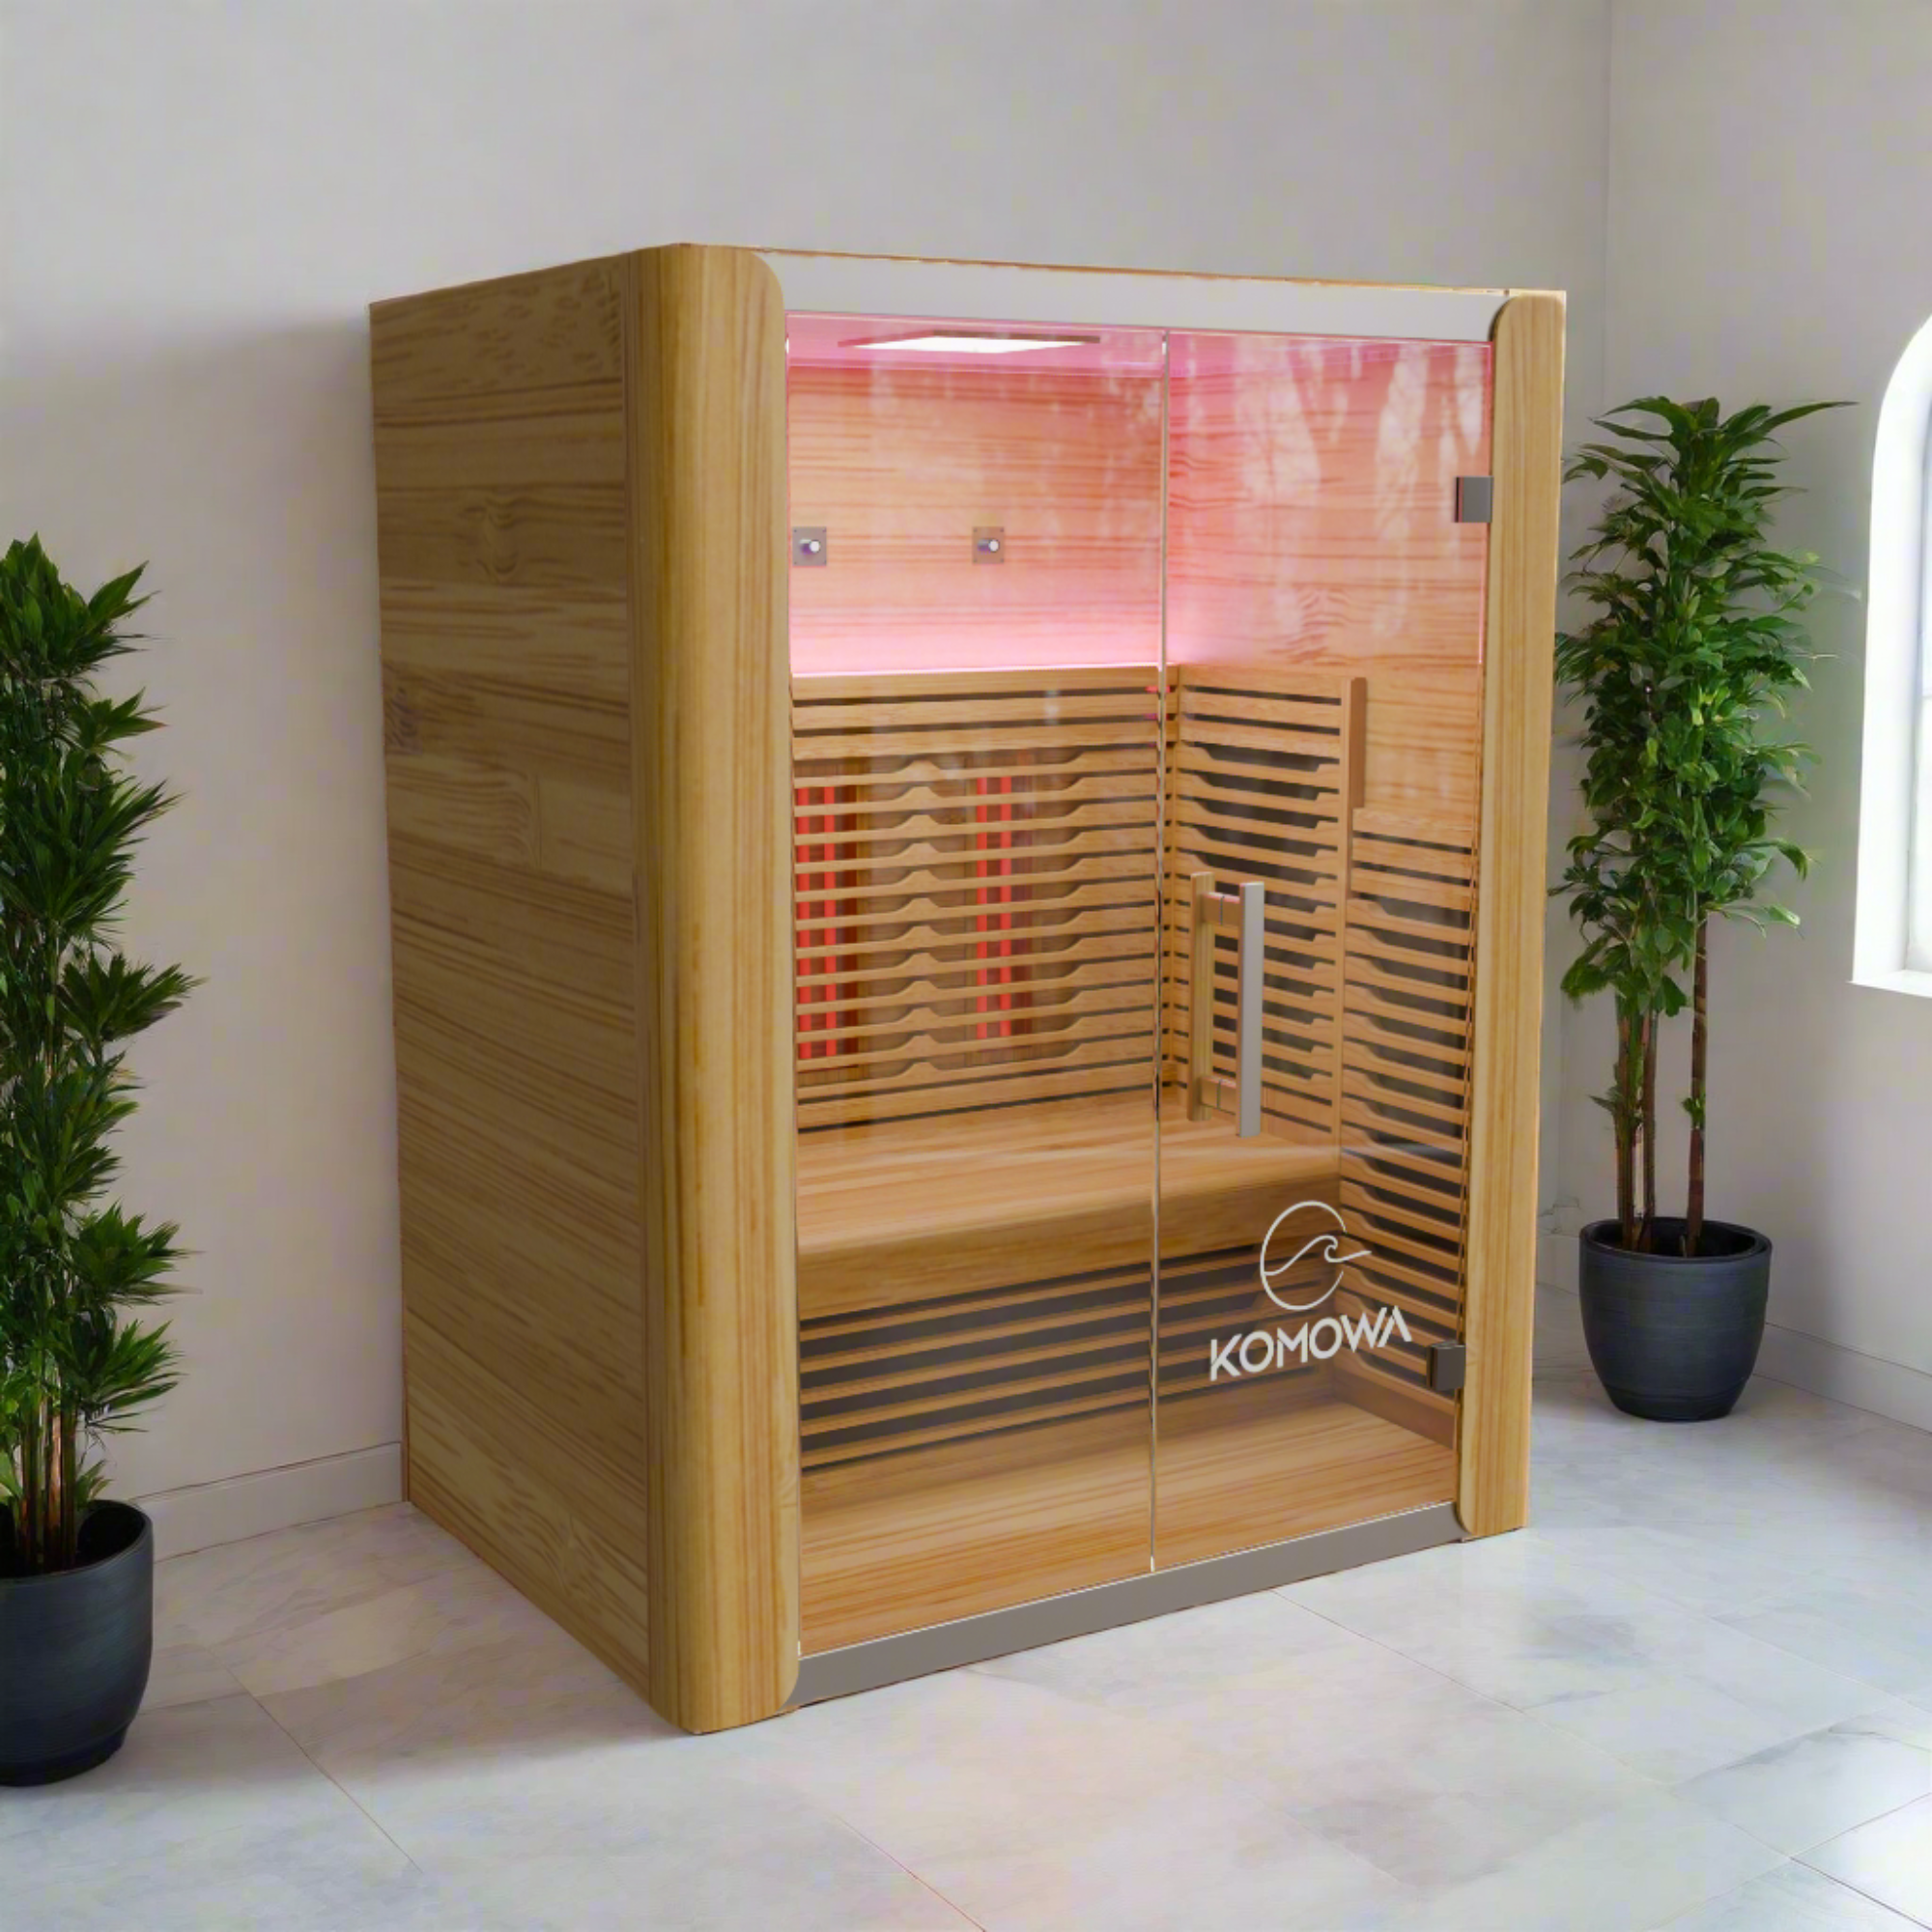 Komowa Como Series Infrared Sauna